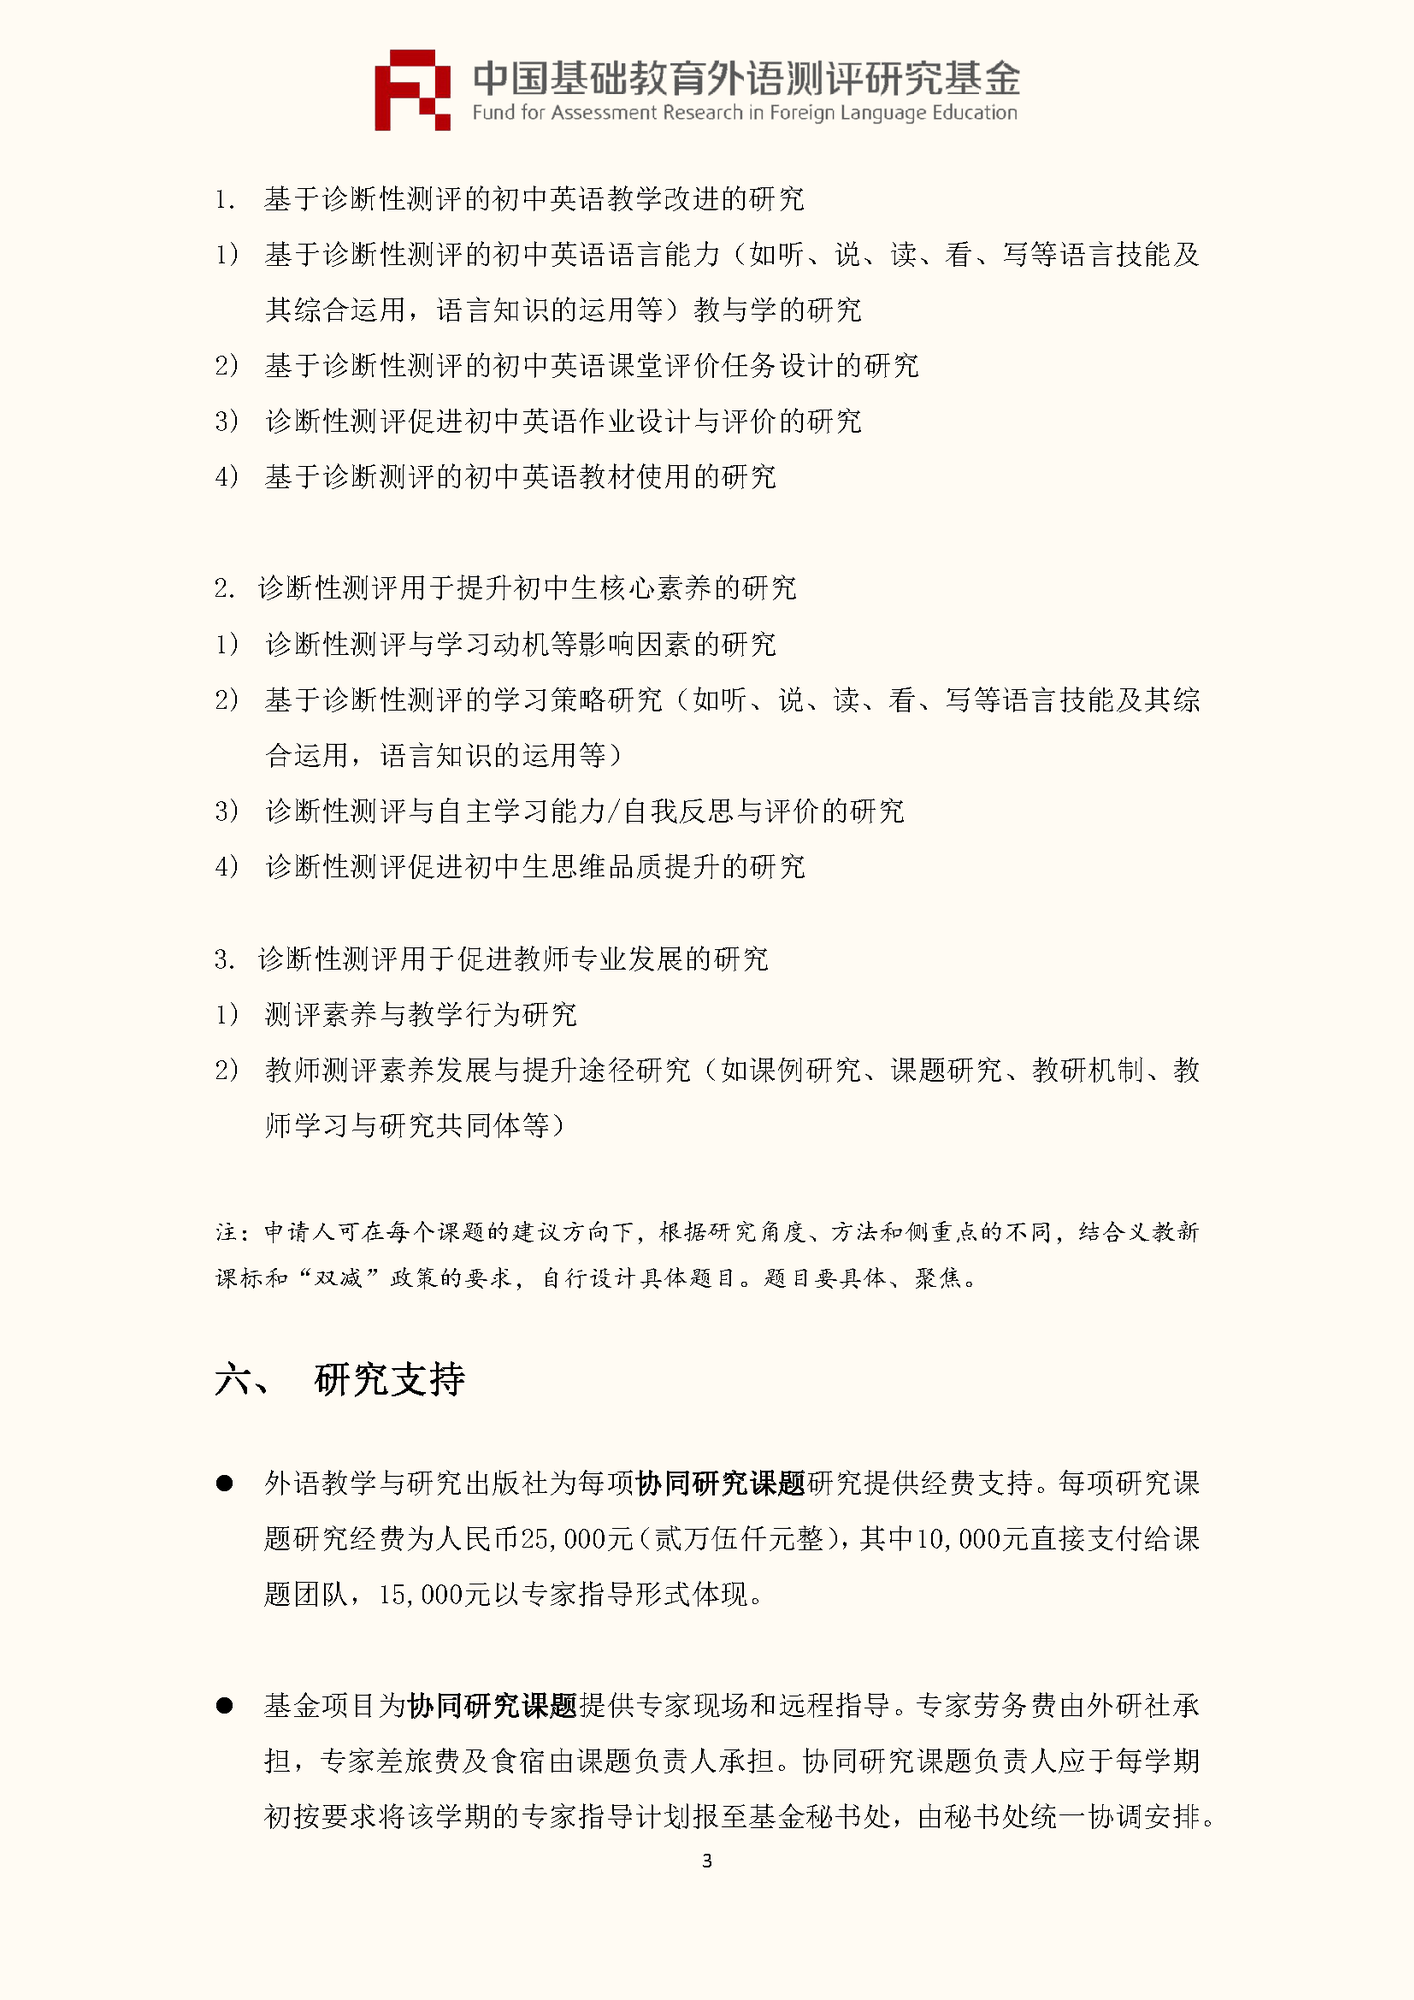 ”中国基础教育外语测评研究基金“项目第四期课题申报指南_页面_05